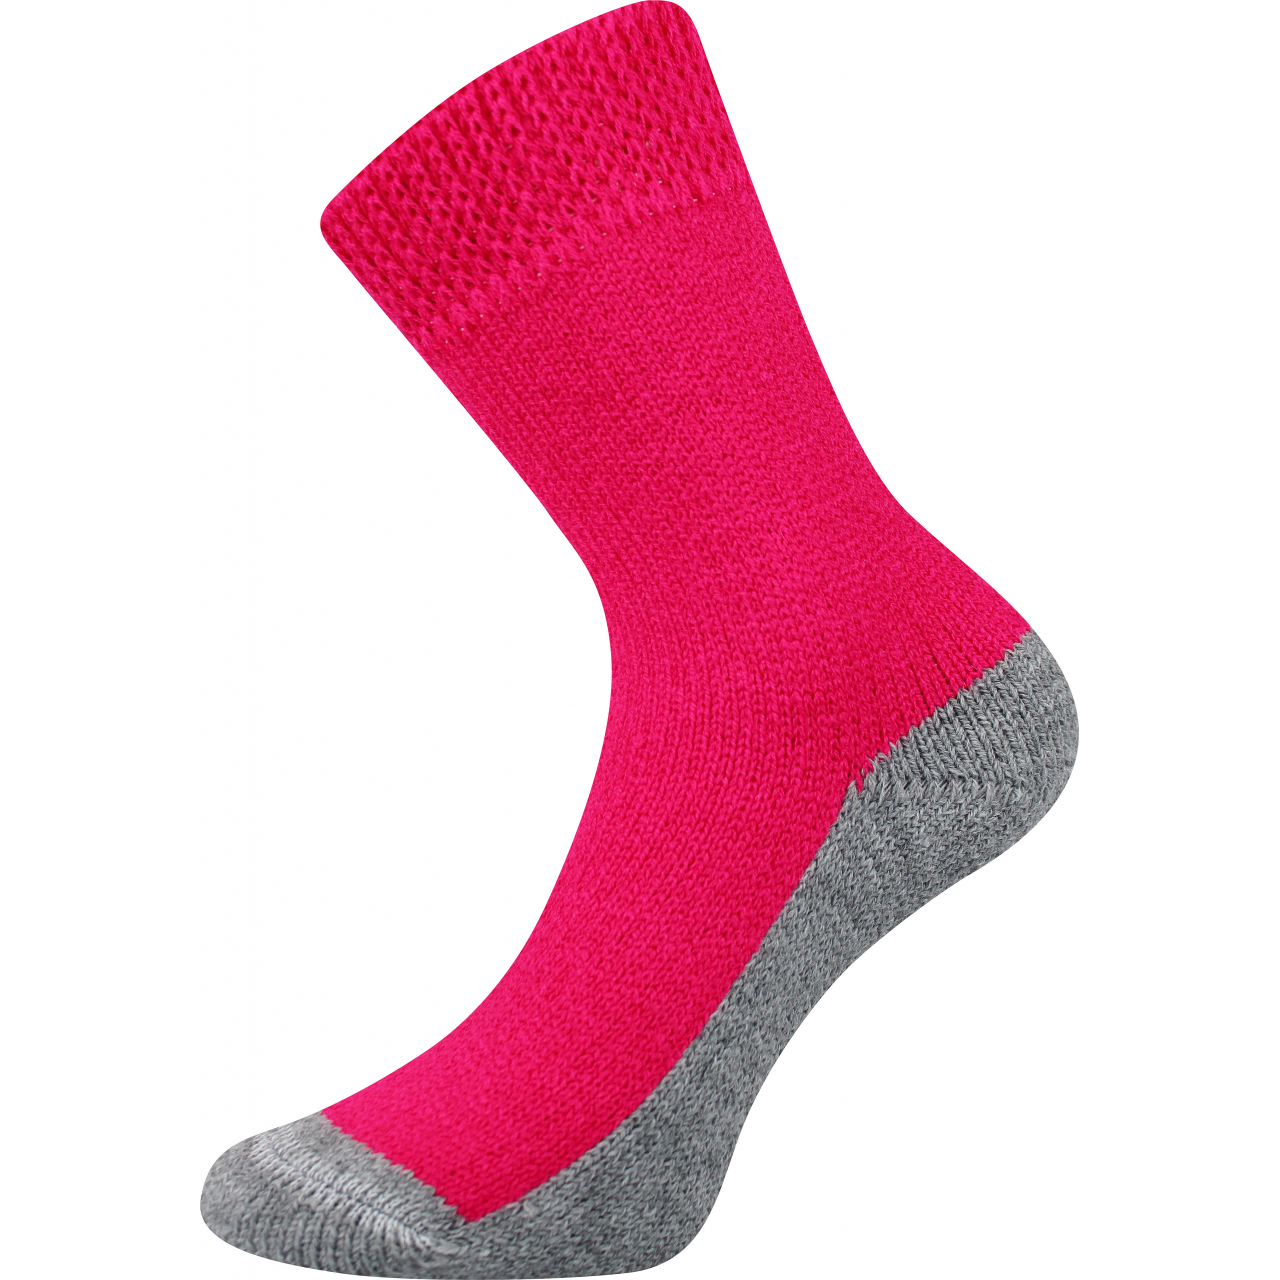 Ponožky unisex Boma Spací - tmavě růžové, 35-38